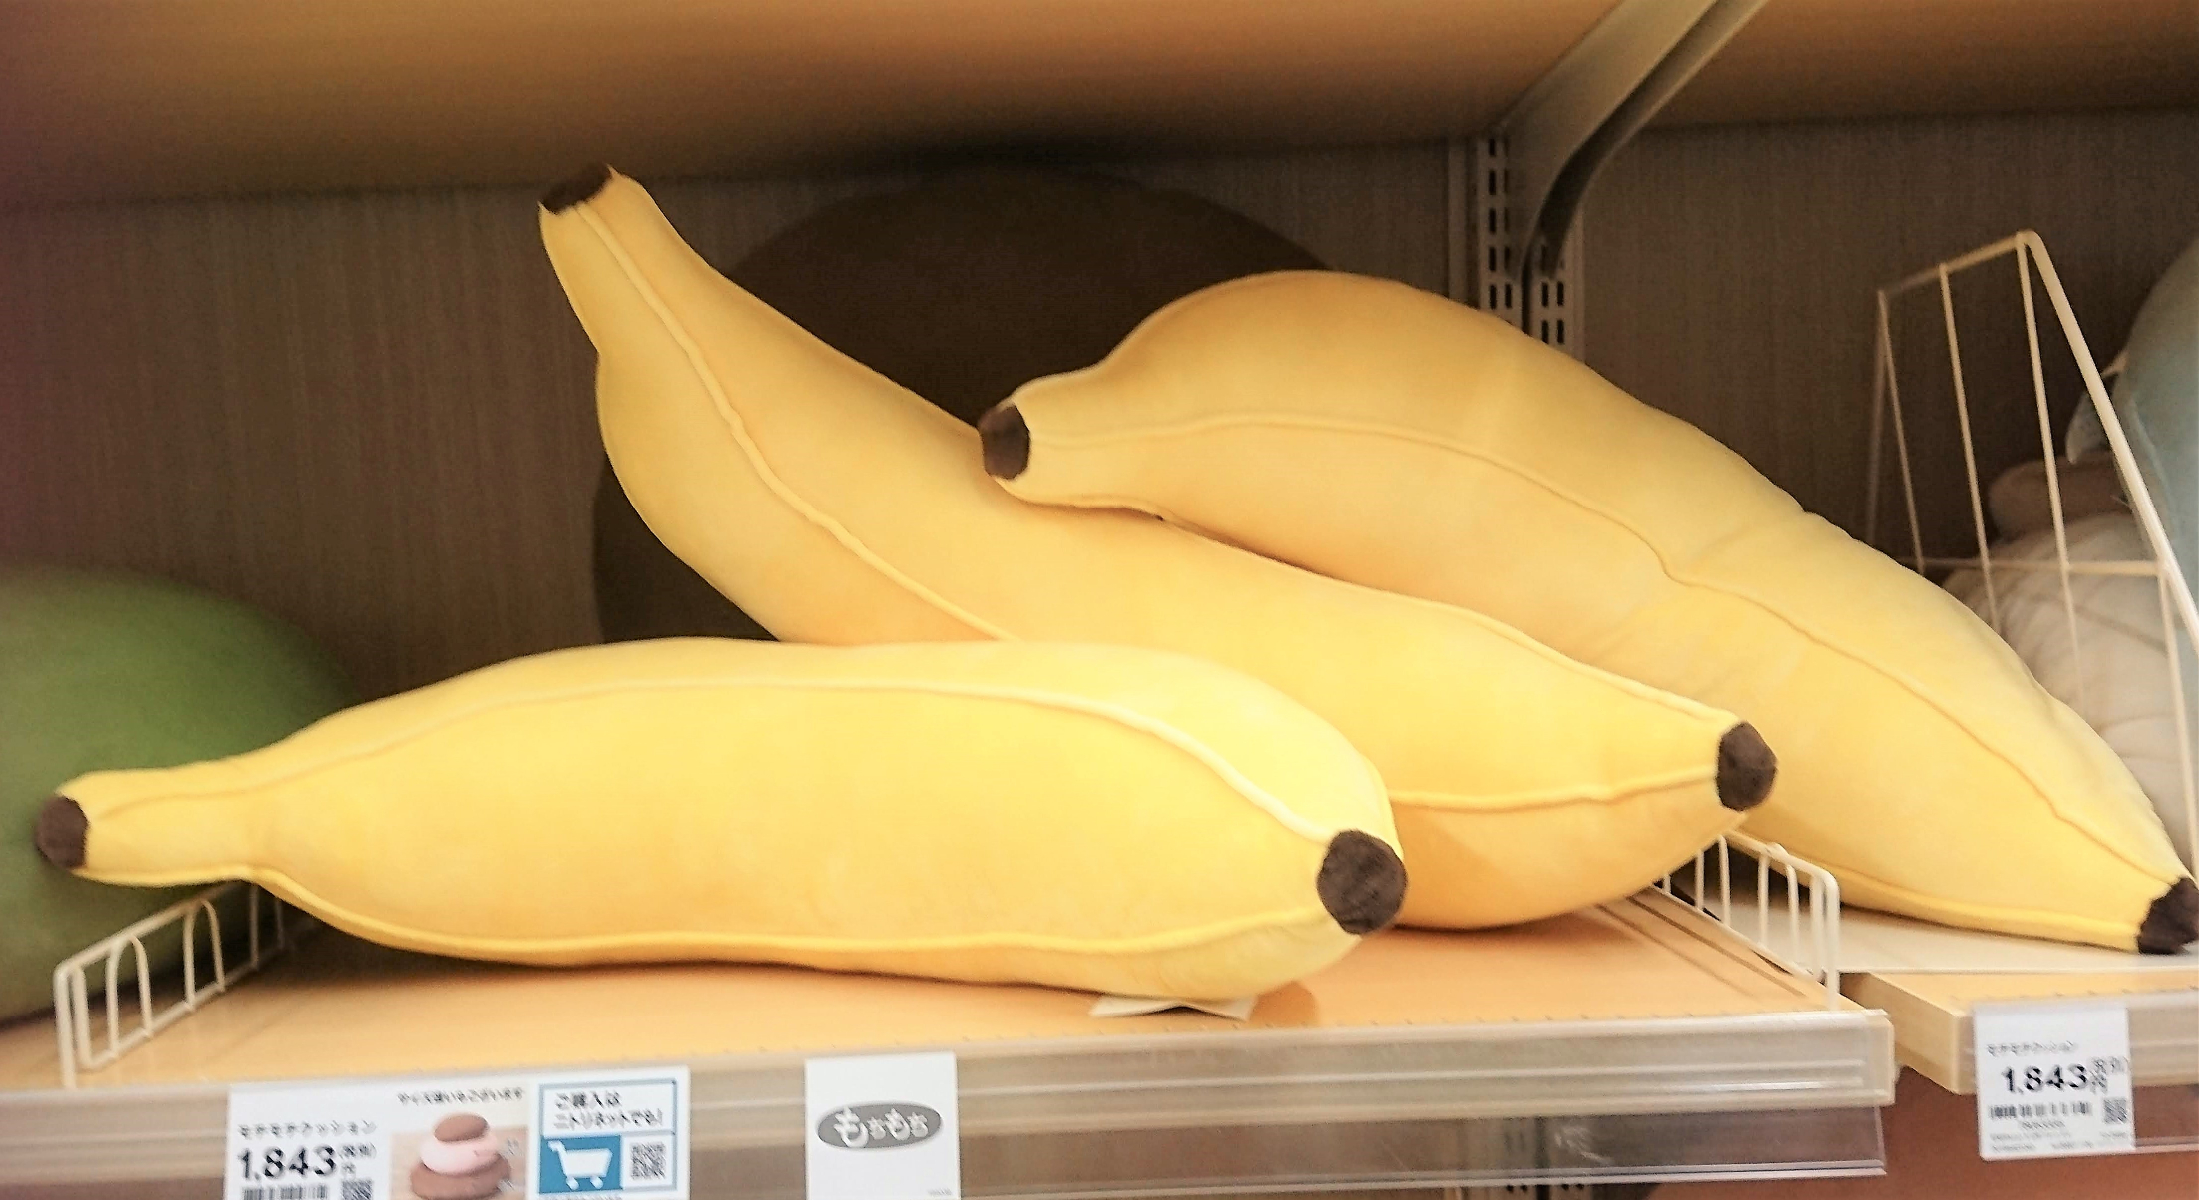 ニトリ のバナナ型クッションがかわいい もちもちの手触りも最高すぎる